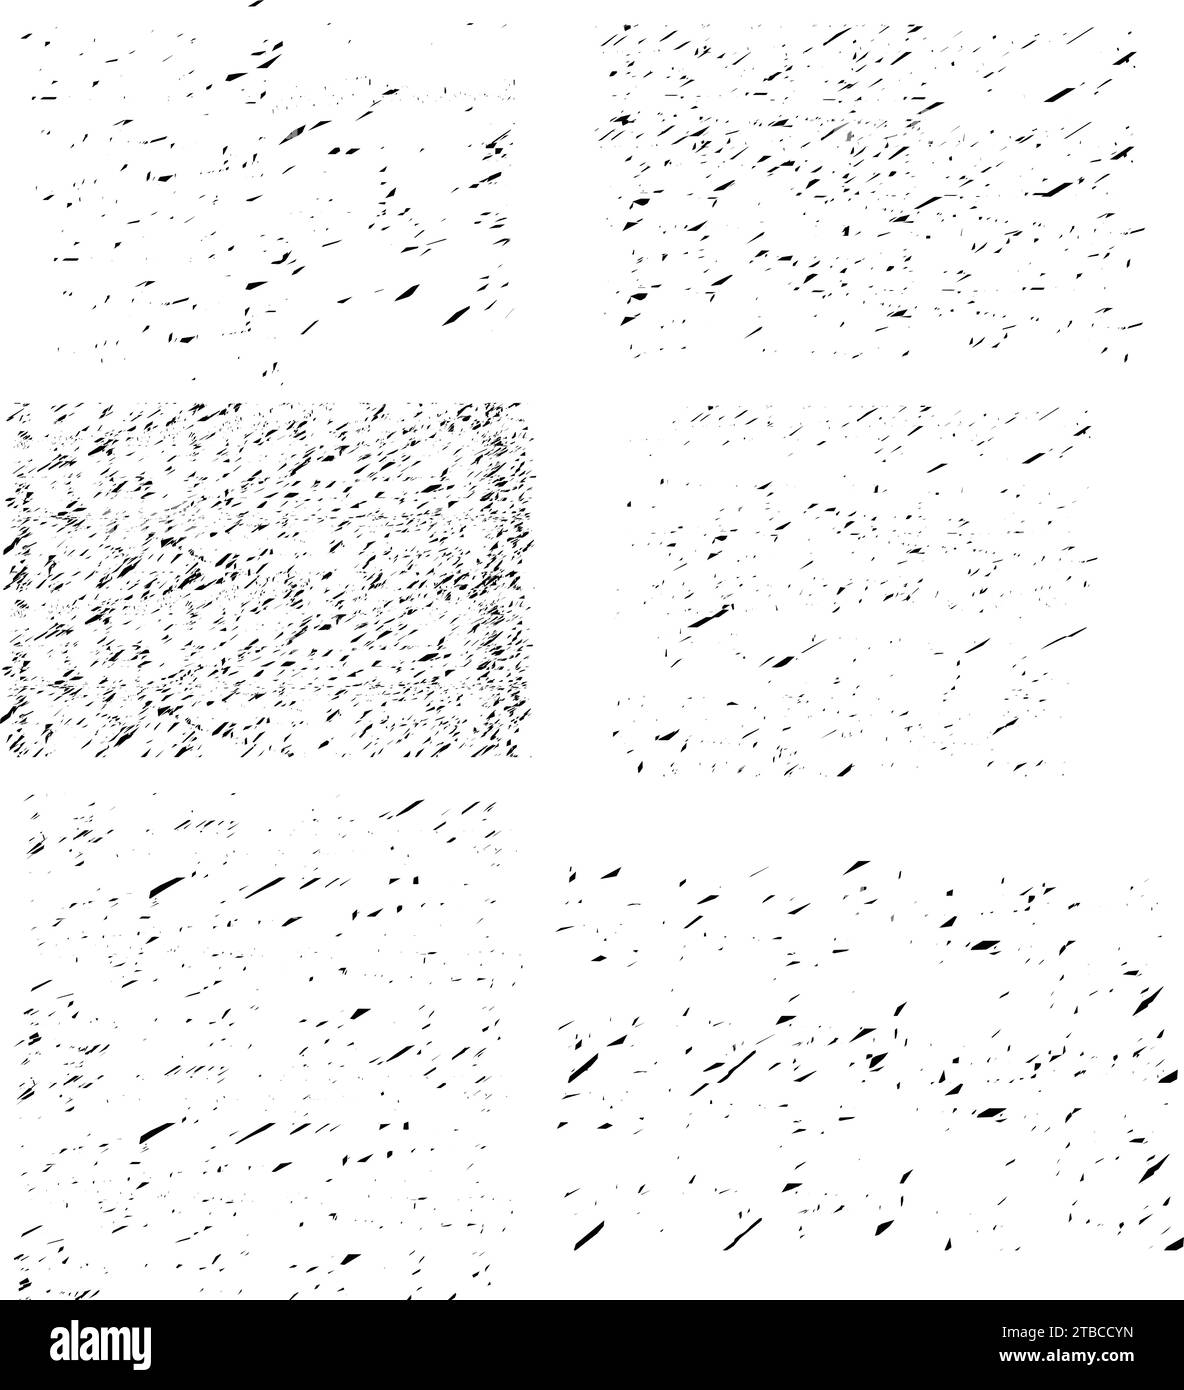 Texture Grunge sporche Set vettoriale immagini Grunge dettagliate texture nero. Campione di sovrapposizione con agenti atmosferici scuri su trasparente Illustrazione Vettoriale